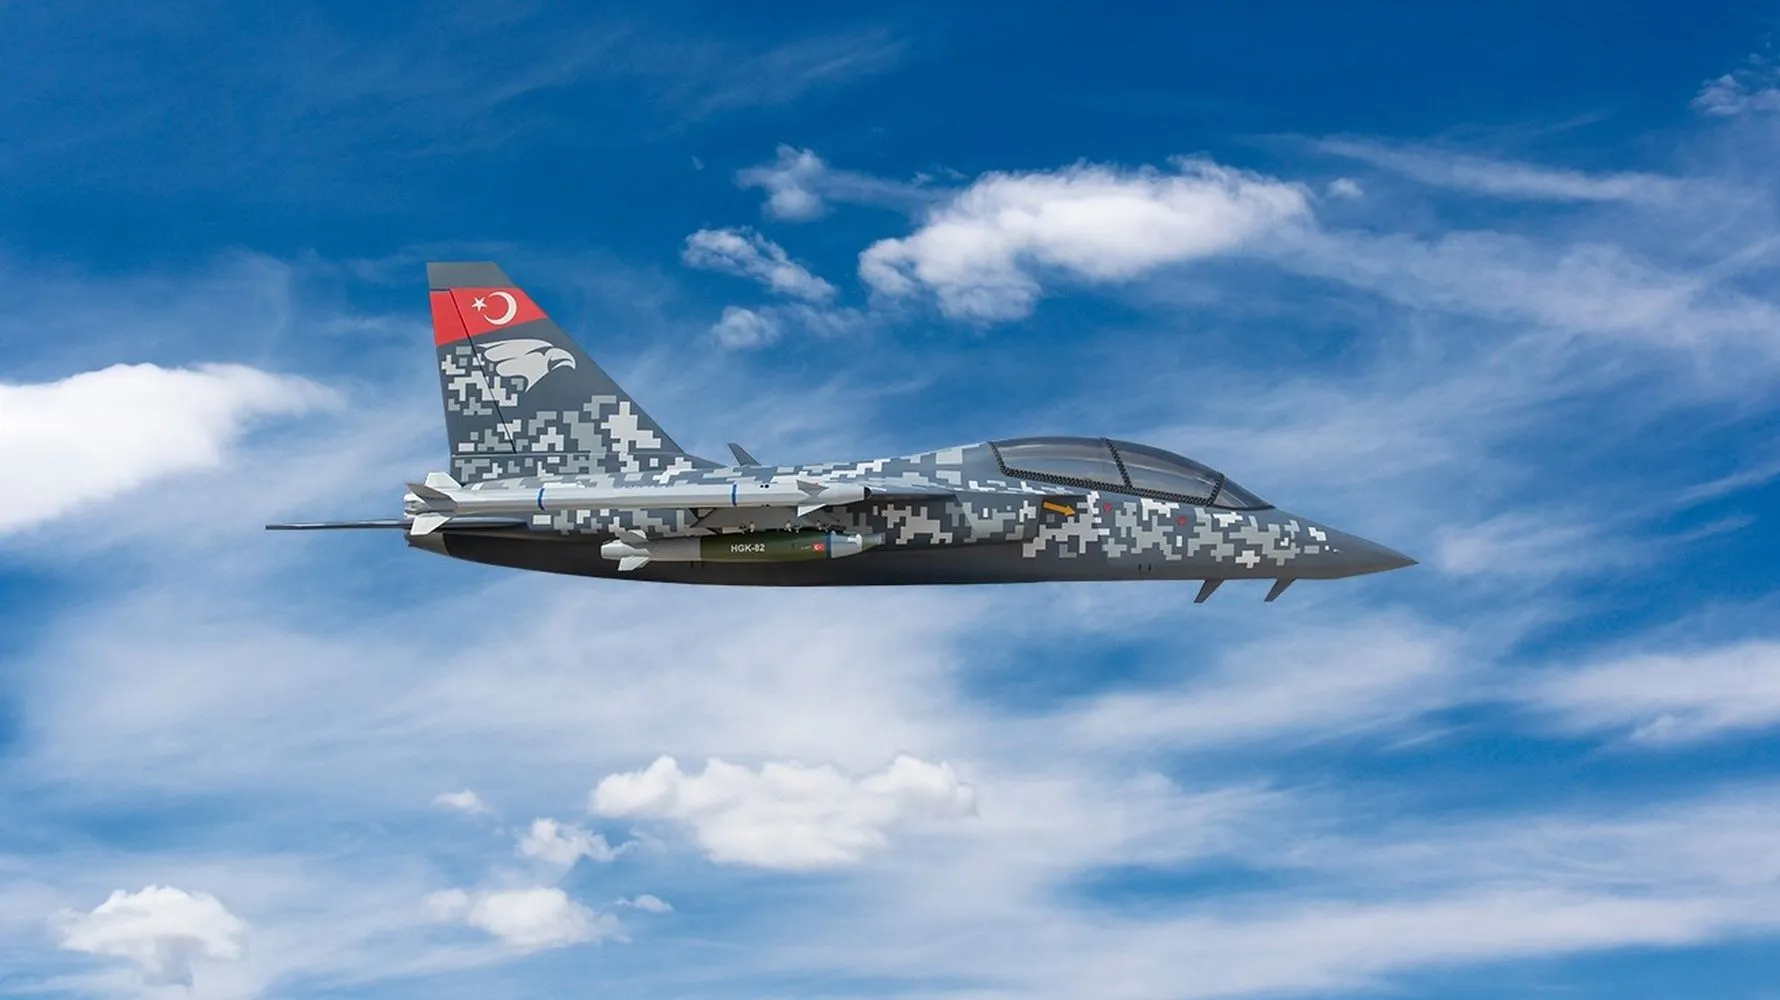 Turecki lekki samolot szturmowy TAI Hürjet po raz pierwszy opuszcza hangar - samolot będzie służył do szkolenia pilotów F-35 i TAI-TF-X